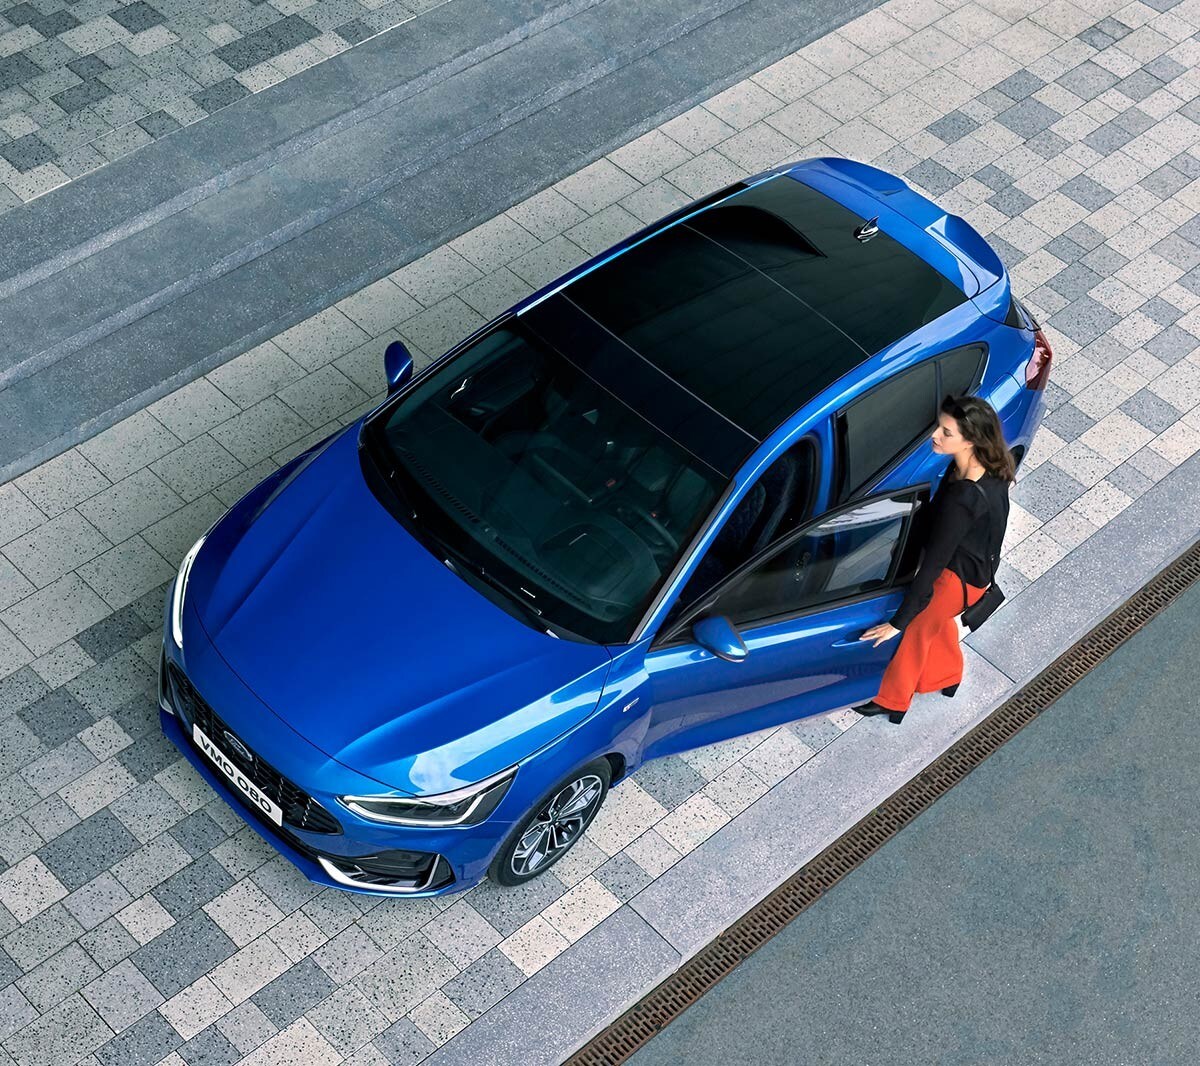 Ford Focus in Blau. Dreiviertel-Frontansicht von oben mit Blick auf das Panorama Schiebedach.